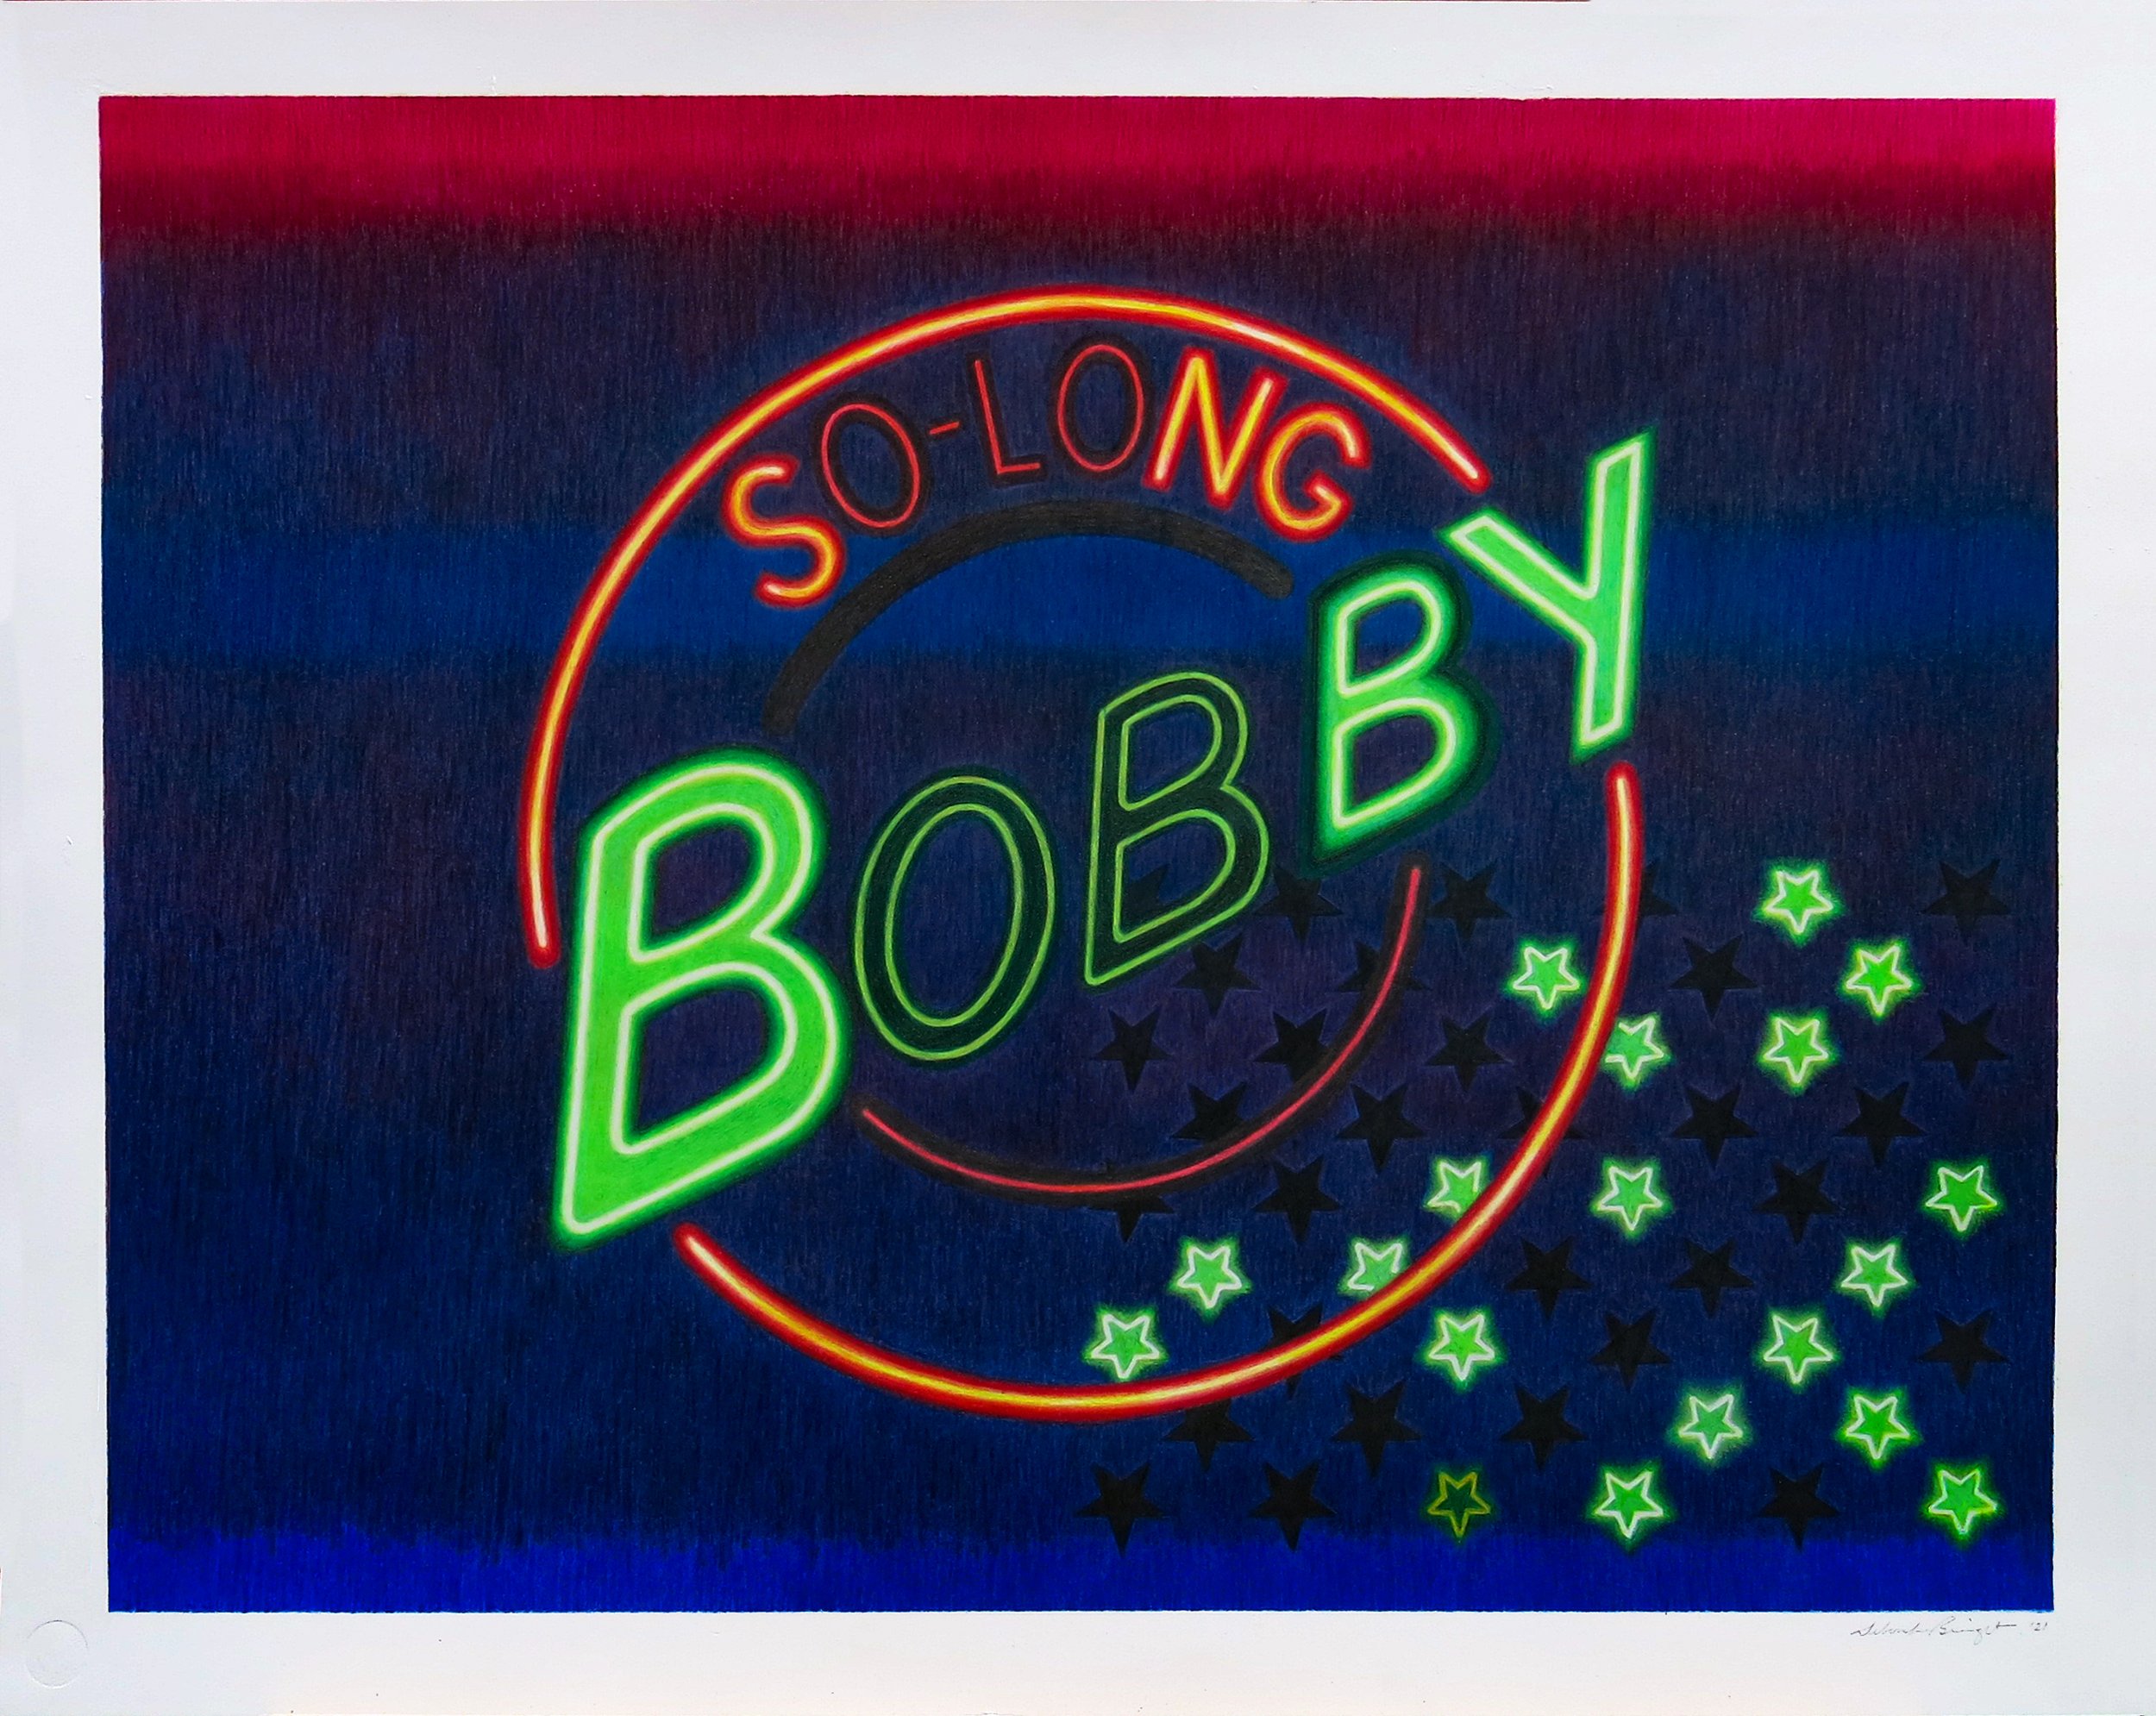 So-Long Bobby Blue